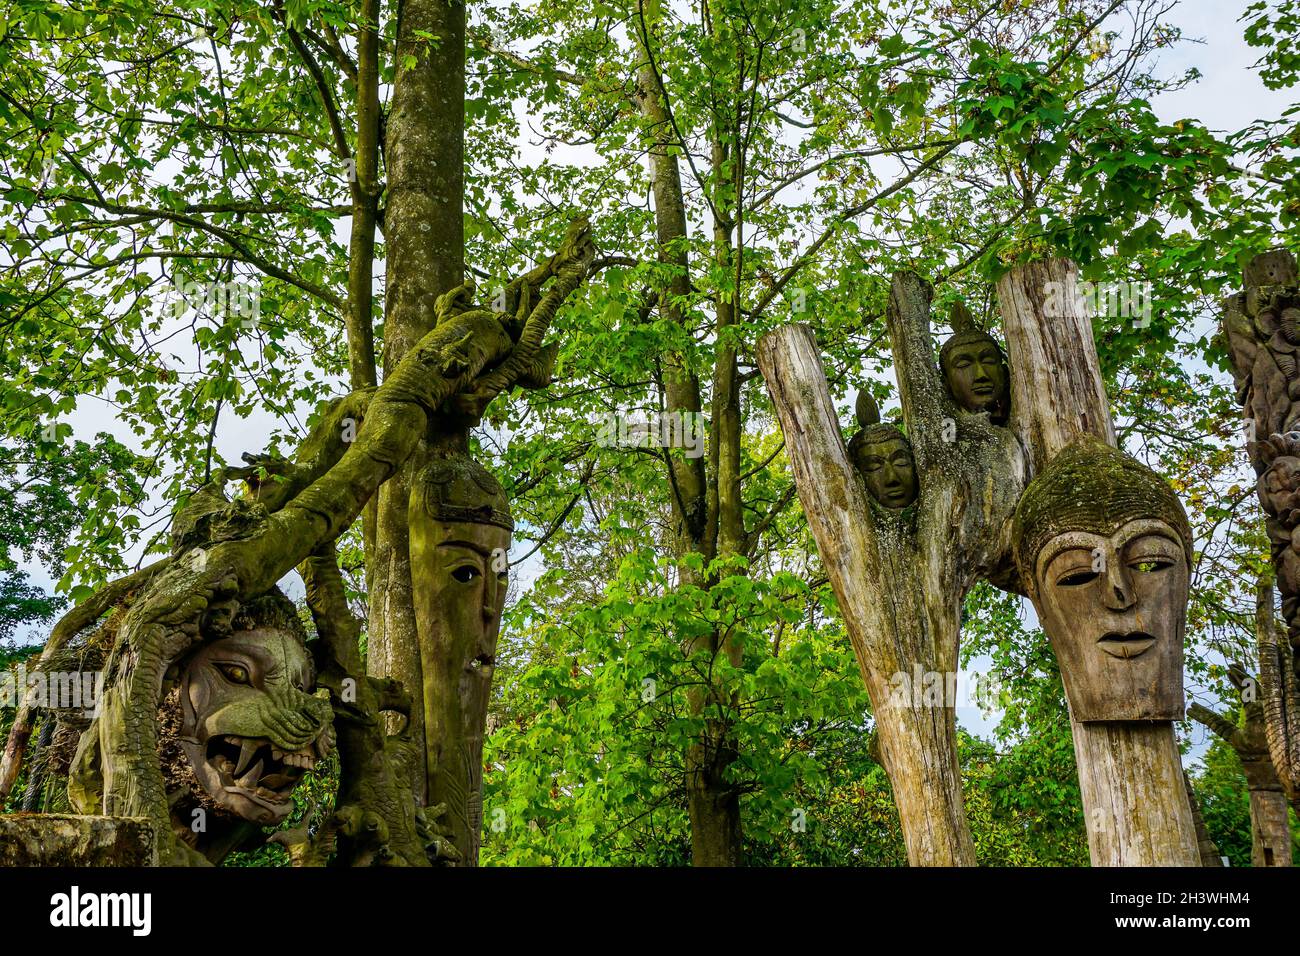 Paysage forestier de quelques anciens masques en bois exprimant différents visages, le masque en bois d'un tigre féroce recouvert de mousse et de végétation Banque D'Images